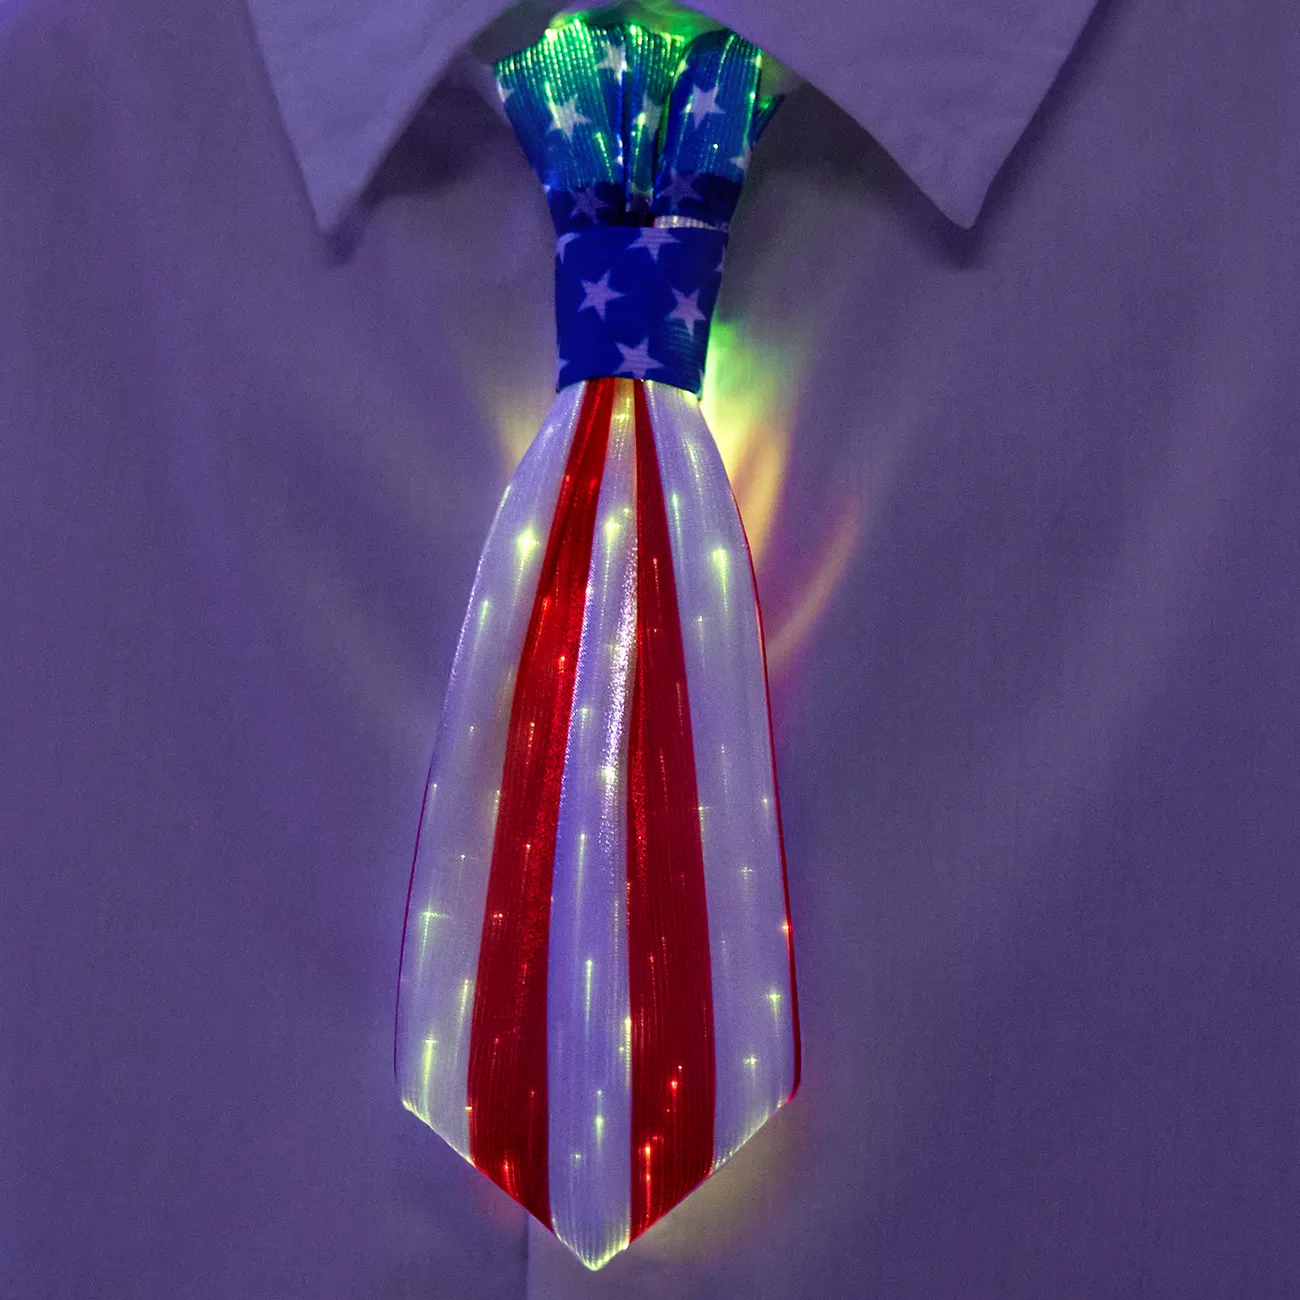 Go-Glow Light Up corbata a rayas que incluye controlador (batería en el interior) Rojo / Blanco big image 1